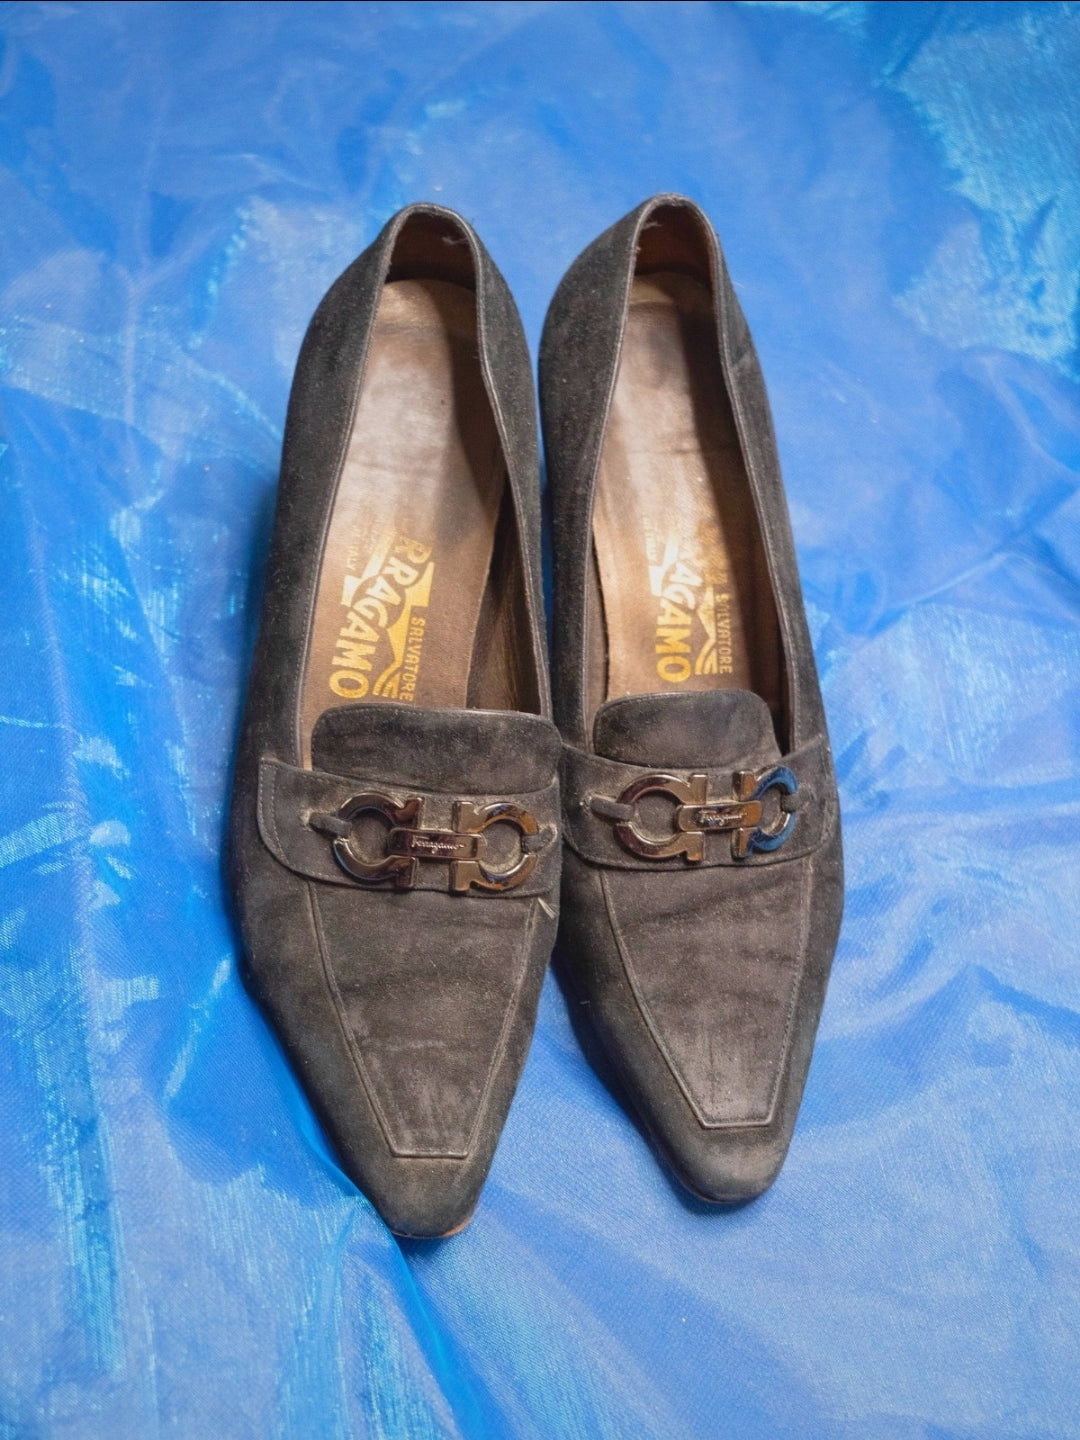 Ferragamo chaussures luxe paris france vintage 